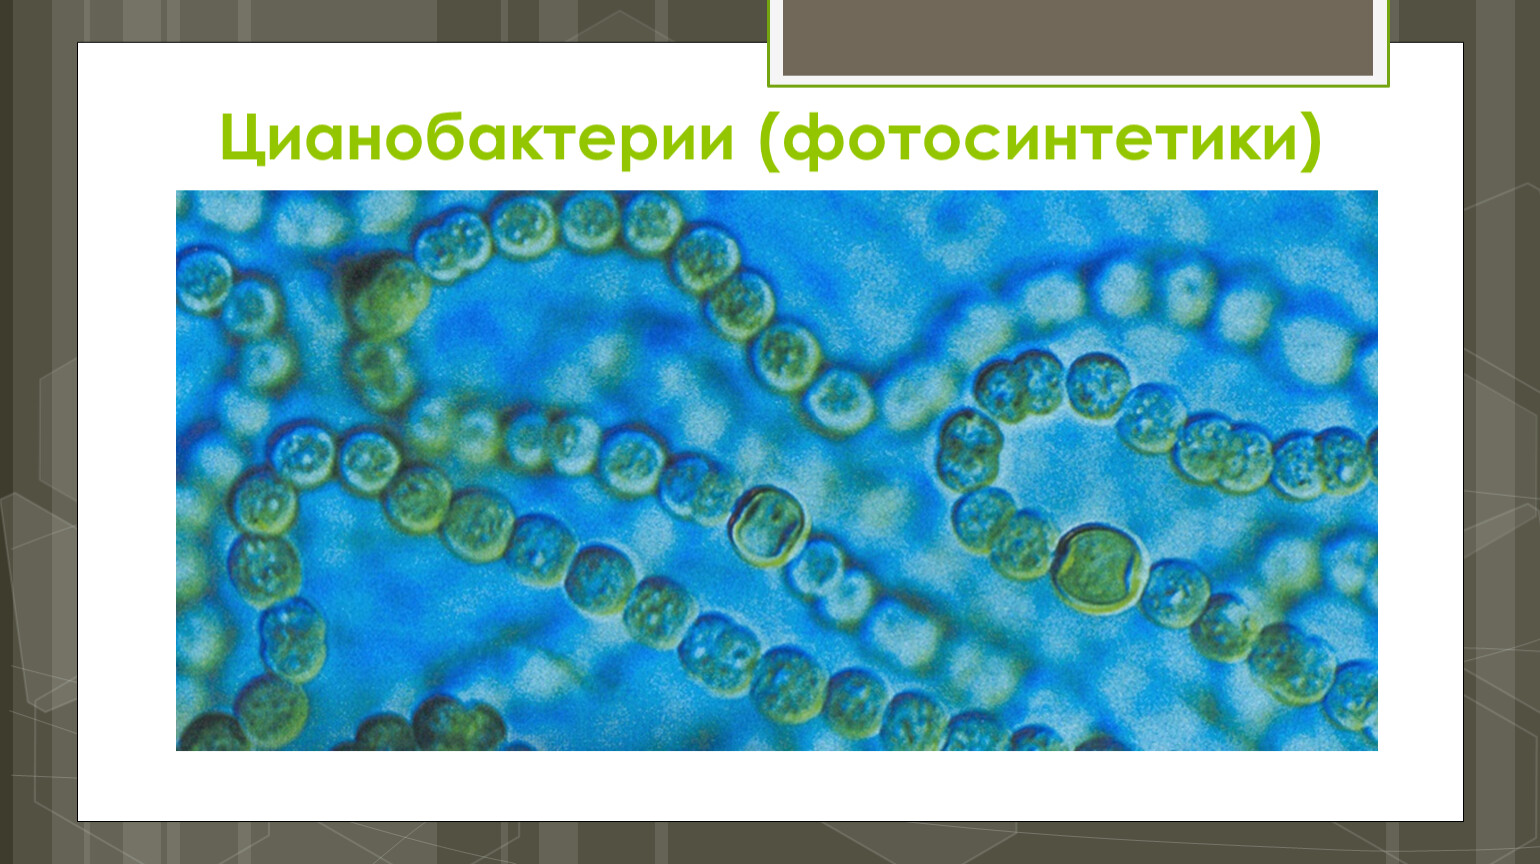 Цианобактерии сине-зеленые водоросли. Синезеленые цианобактерии. Фотосинтезирующие цианобактерии. Цианобактерии это в биологии 5 класс. Группы организмов цианобактерии